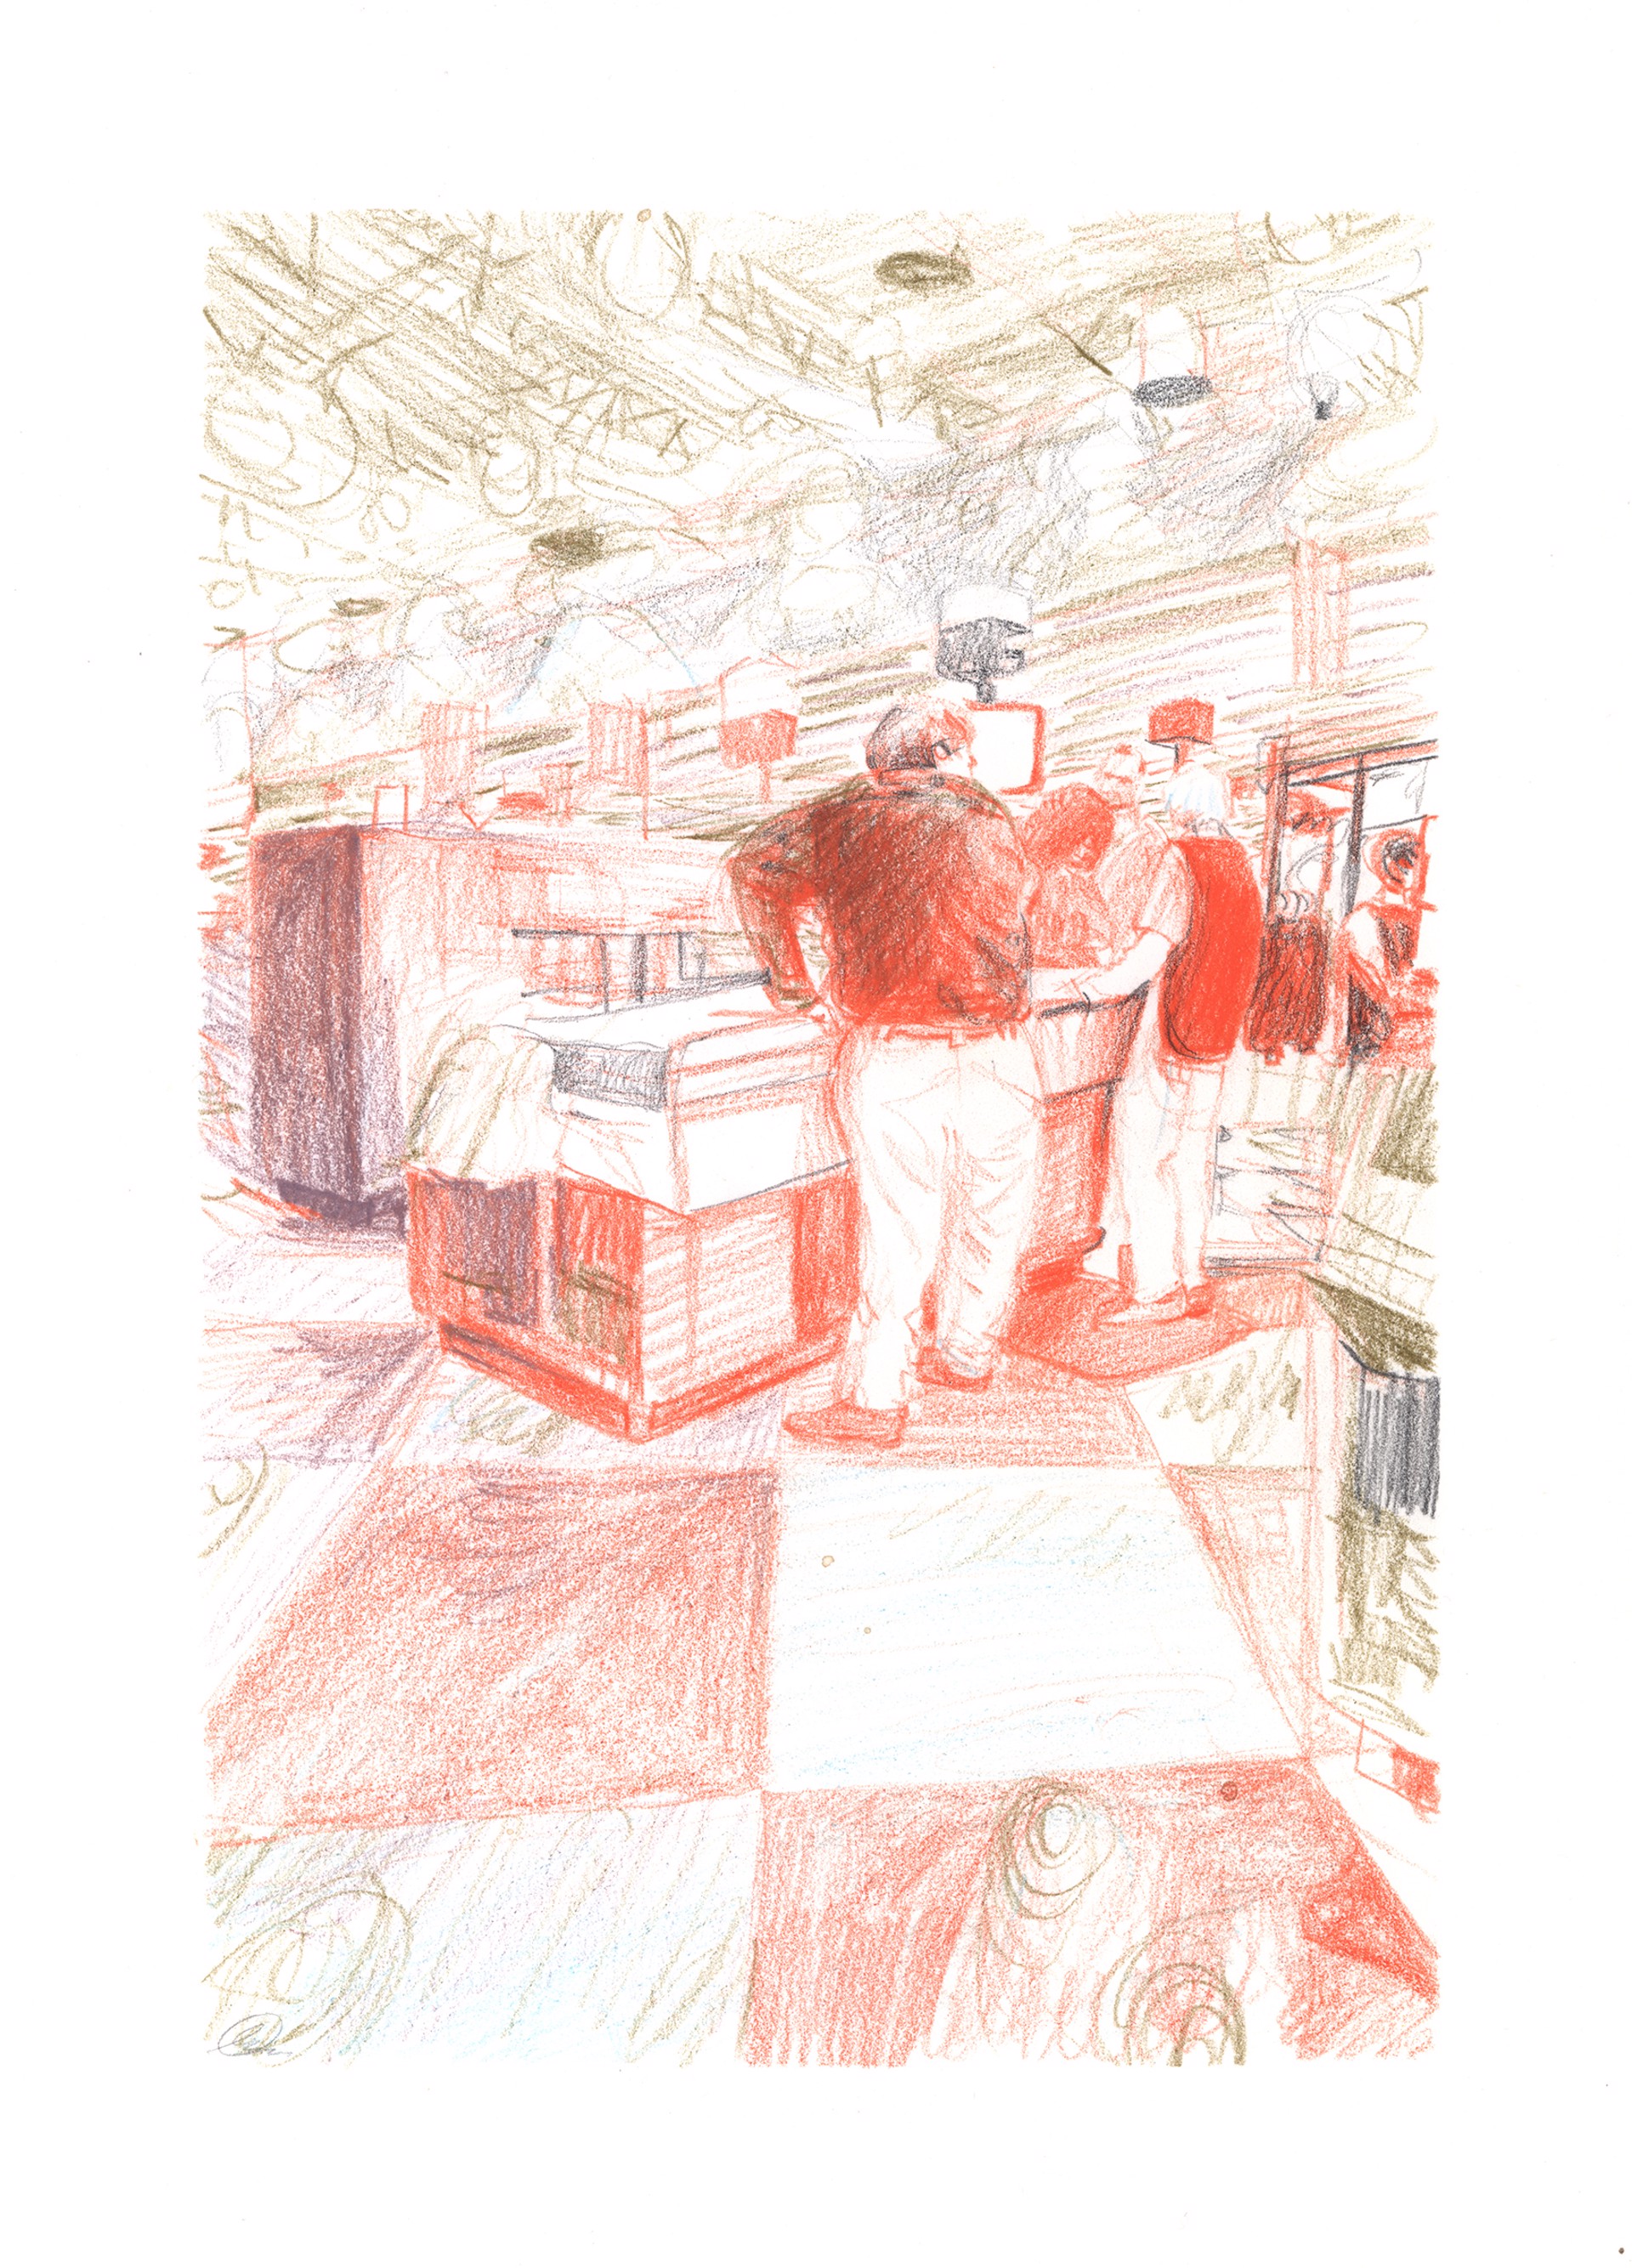 Marketplace/Cashier #13 by Eilis Crean